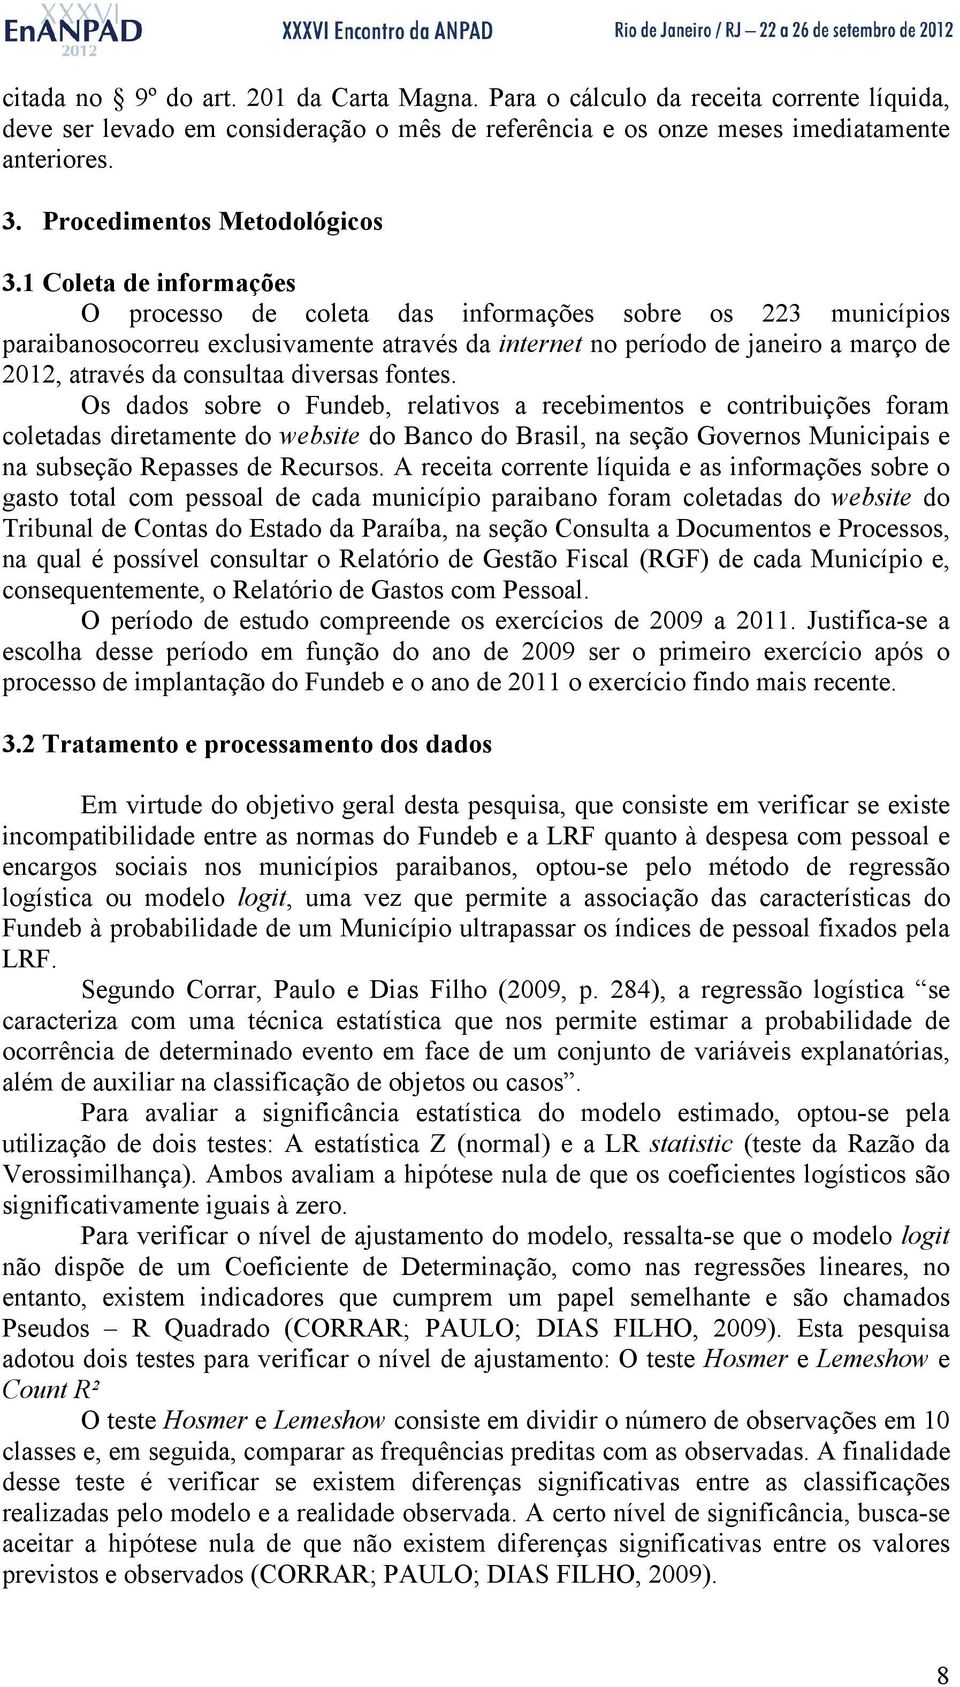 1 Coleta de informações O processo de coleta das informações sobre os 223 municípios paraibanosocorreu exclusivamente através da internet no período de janeiro a março de 2012, através da consultaa